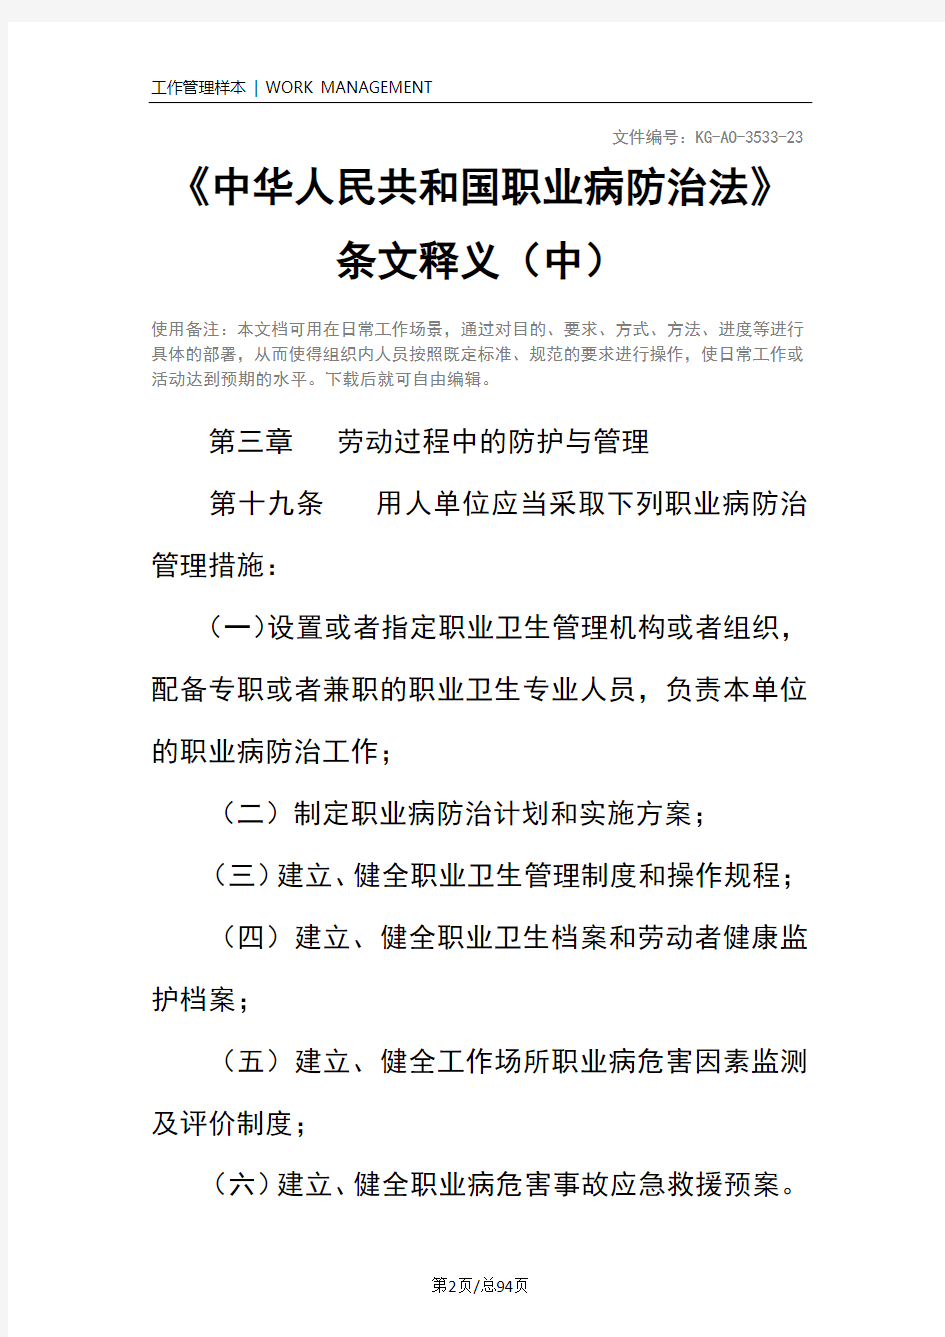 《中华人民共和国职业病防治法》条文释义(中)